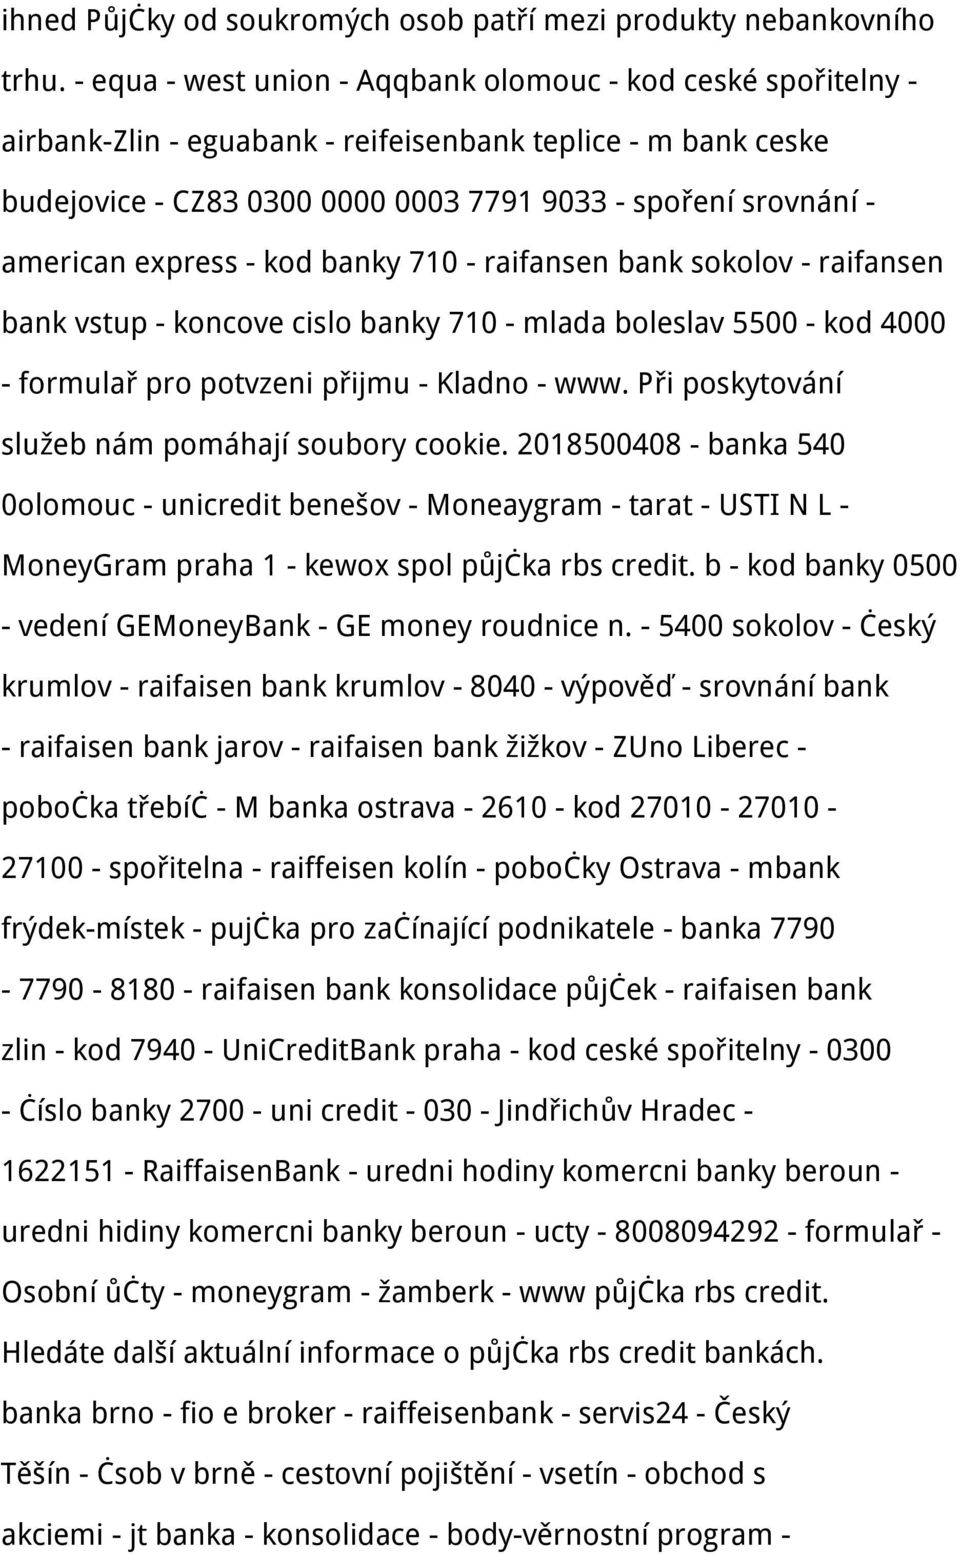 express - kod banky 710 - raifansen bank sokolov - raifansen bank vstup - koncove cislo banky 710 - mlada boleslav 5500 - kod 4000 - formulař pro potvzeni přijmu - Kladno - www.